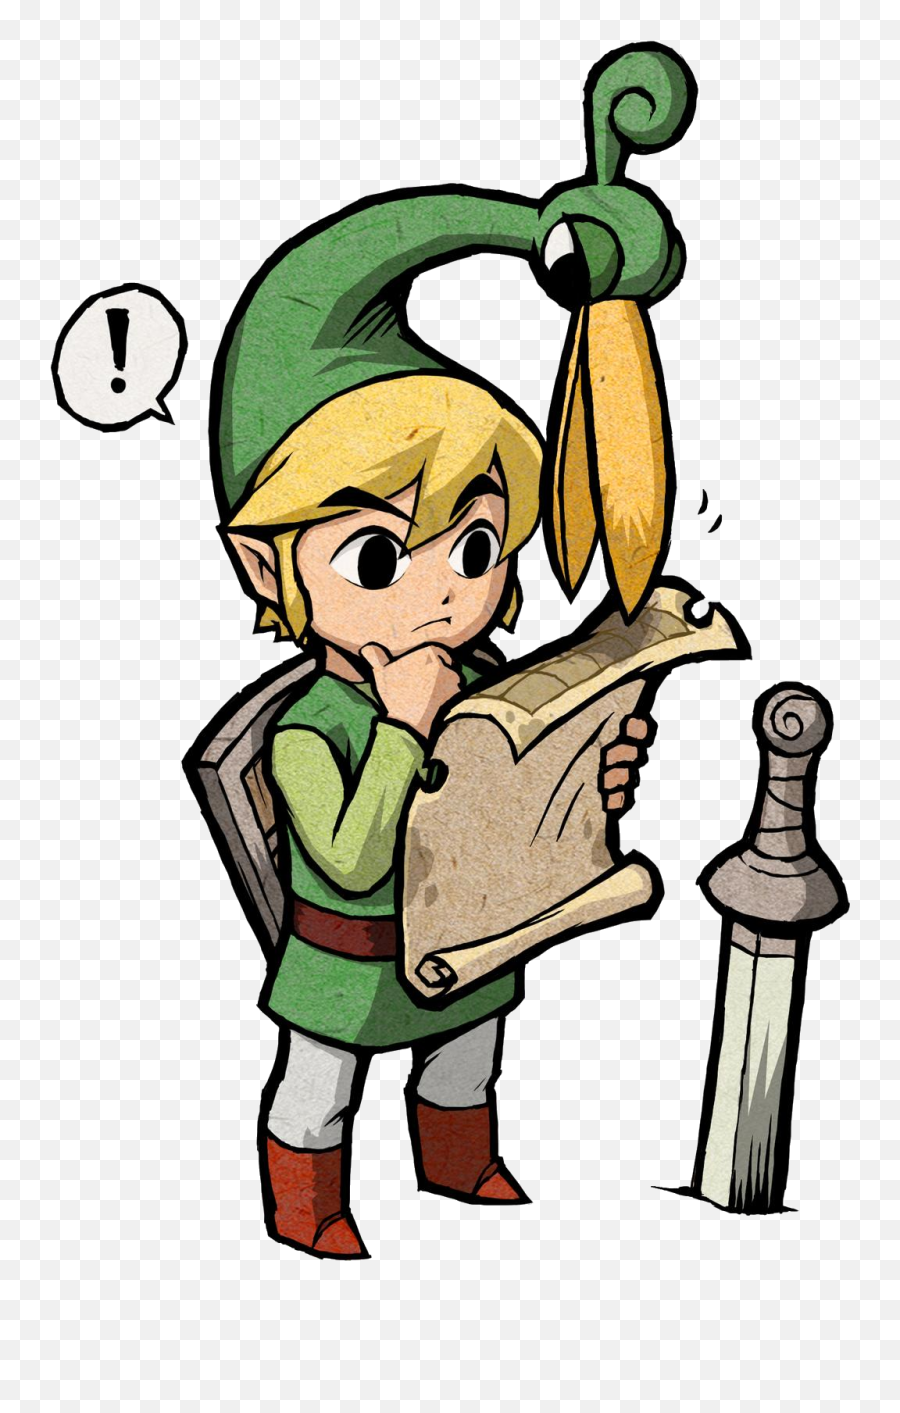 Zelda Is Links Sister - Legend Of Zelda The Minish Png,Link Zelda Png